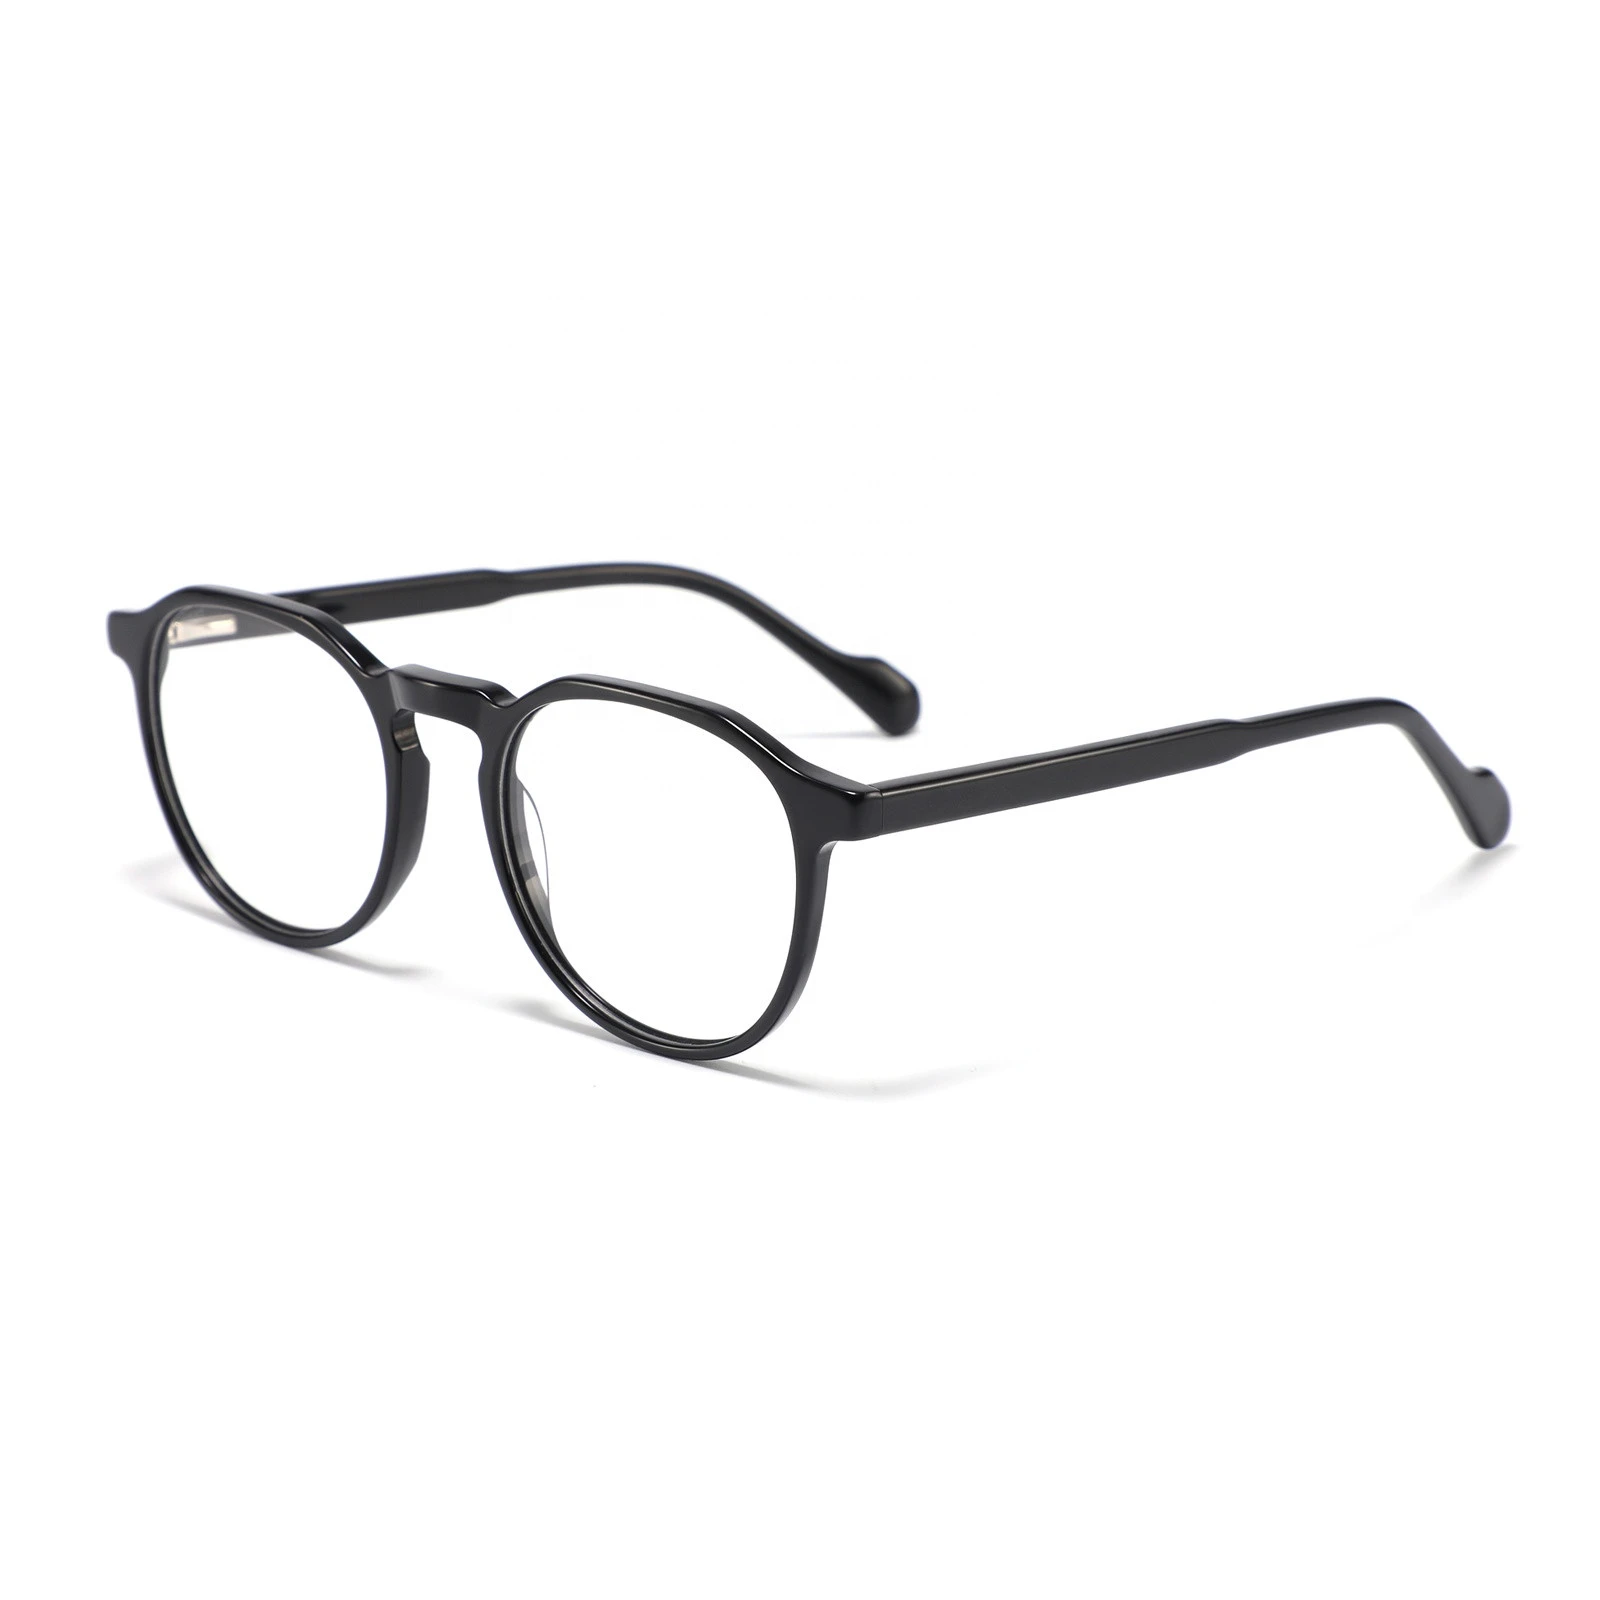 2021 new arrive acetate frame optical glasses manufacturer optical eyeglasses frames